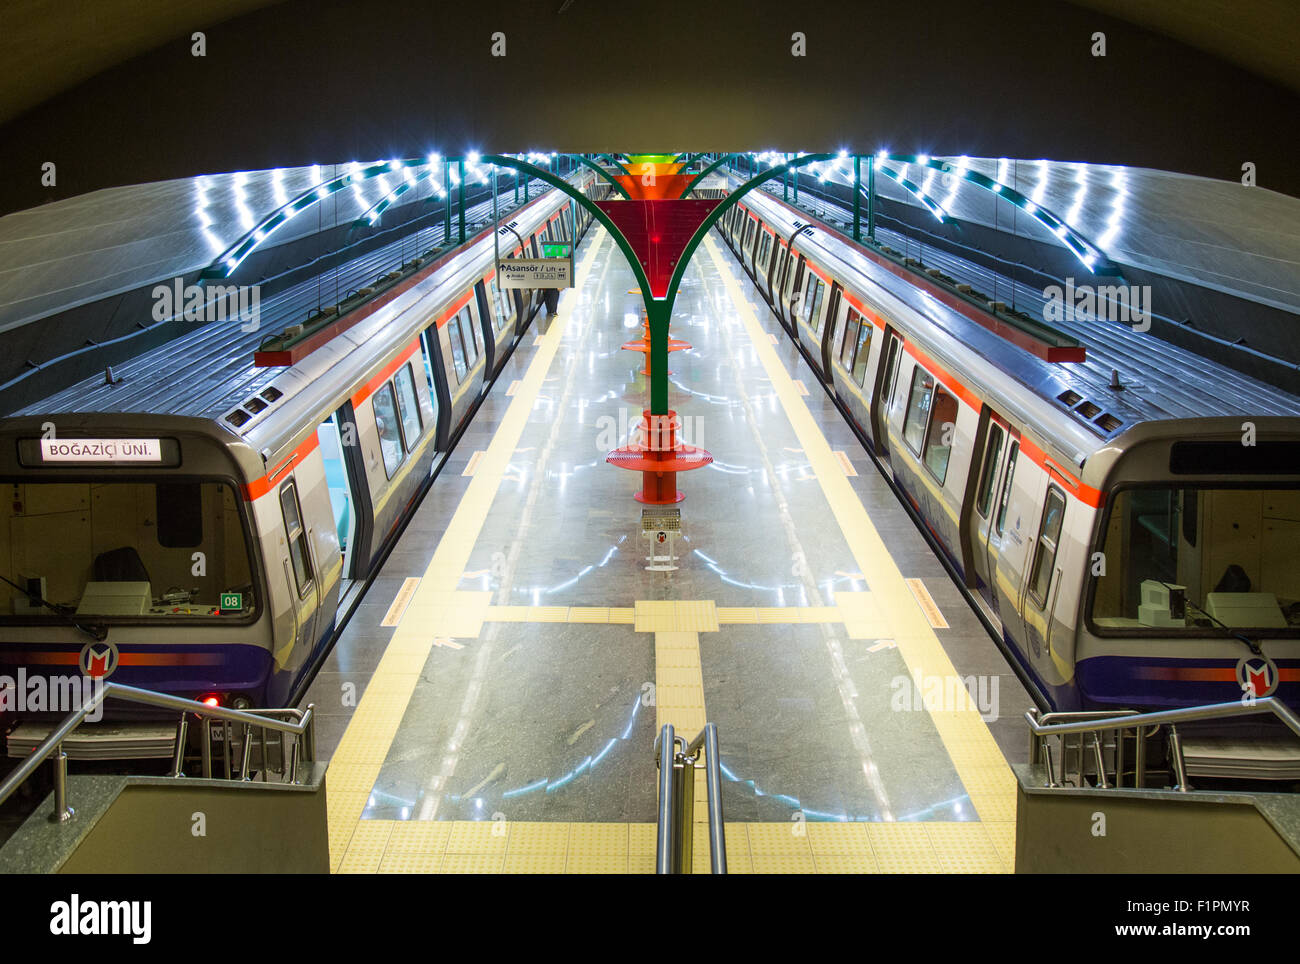 M6 Levent Bogazici línea del metro de Estambul Turquia Foto de stock